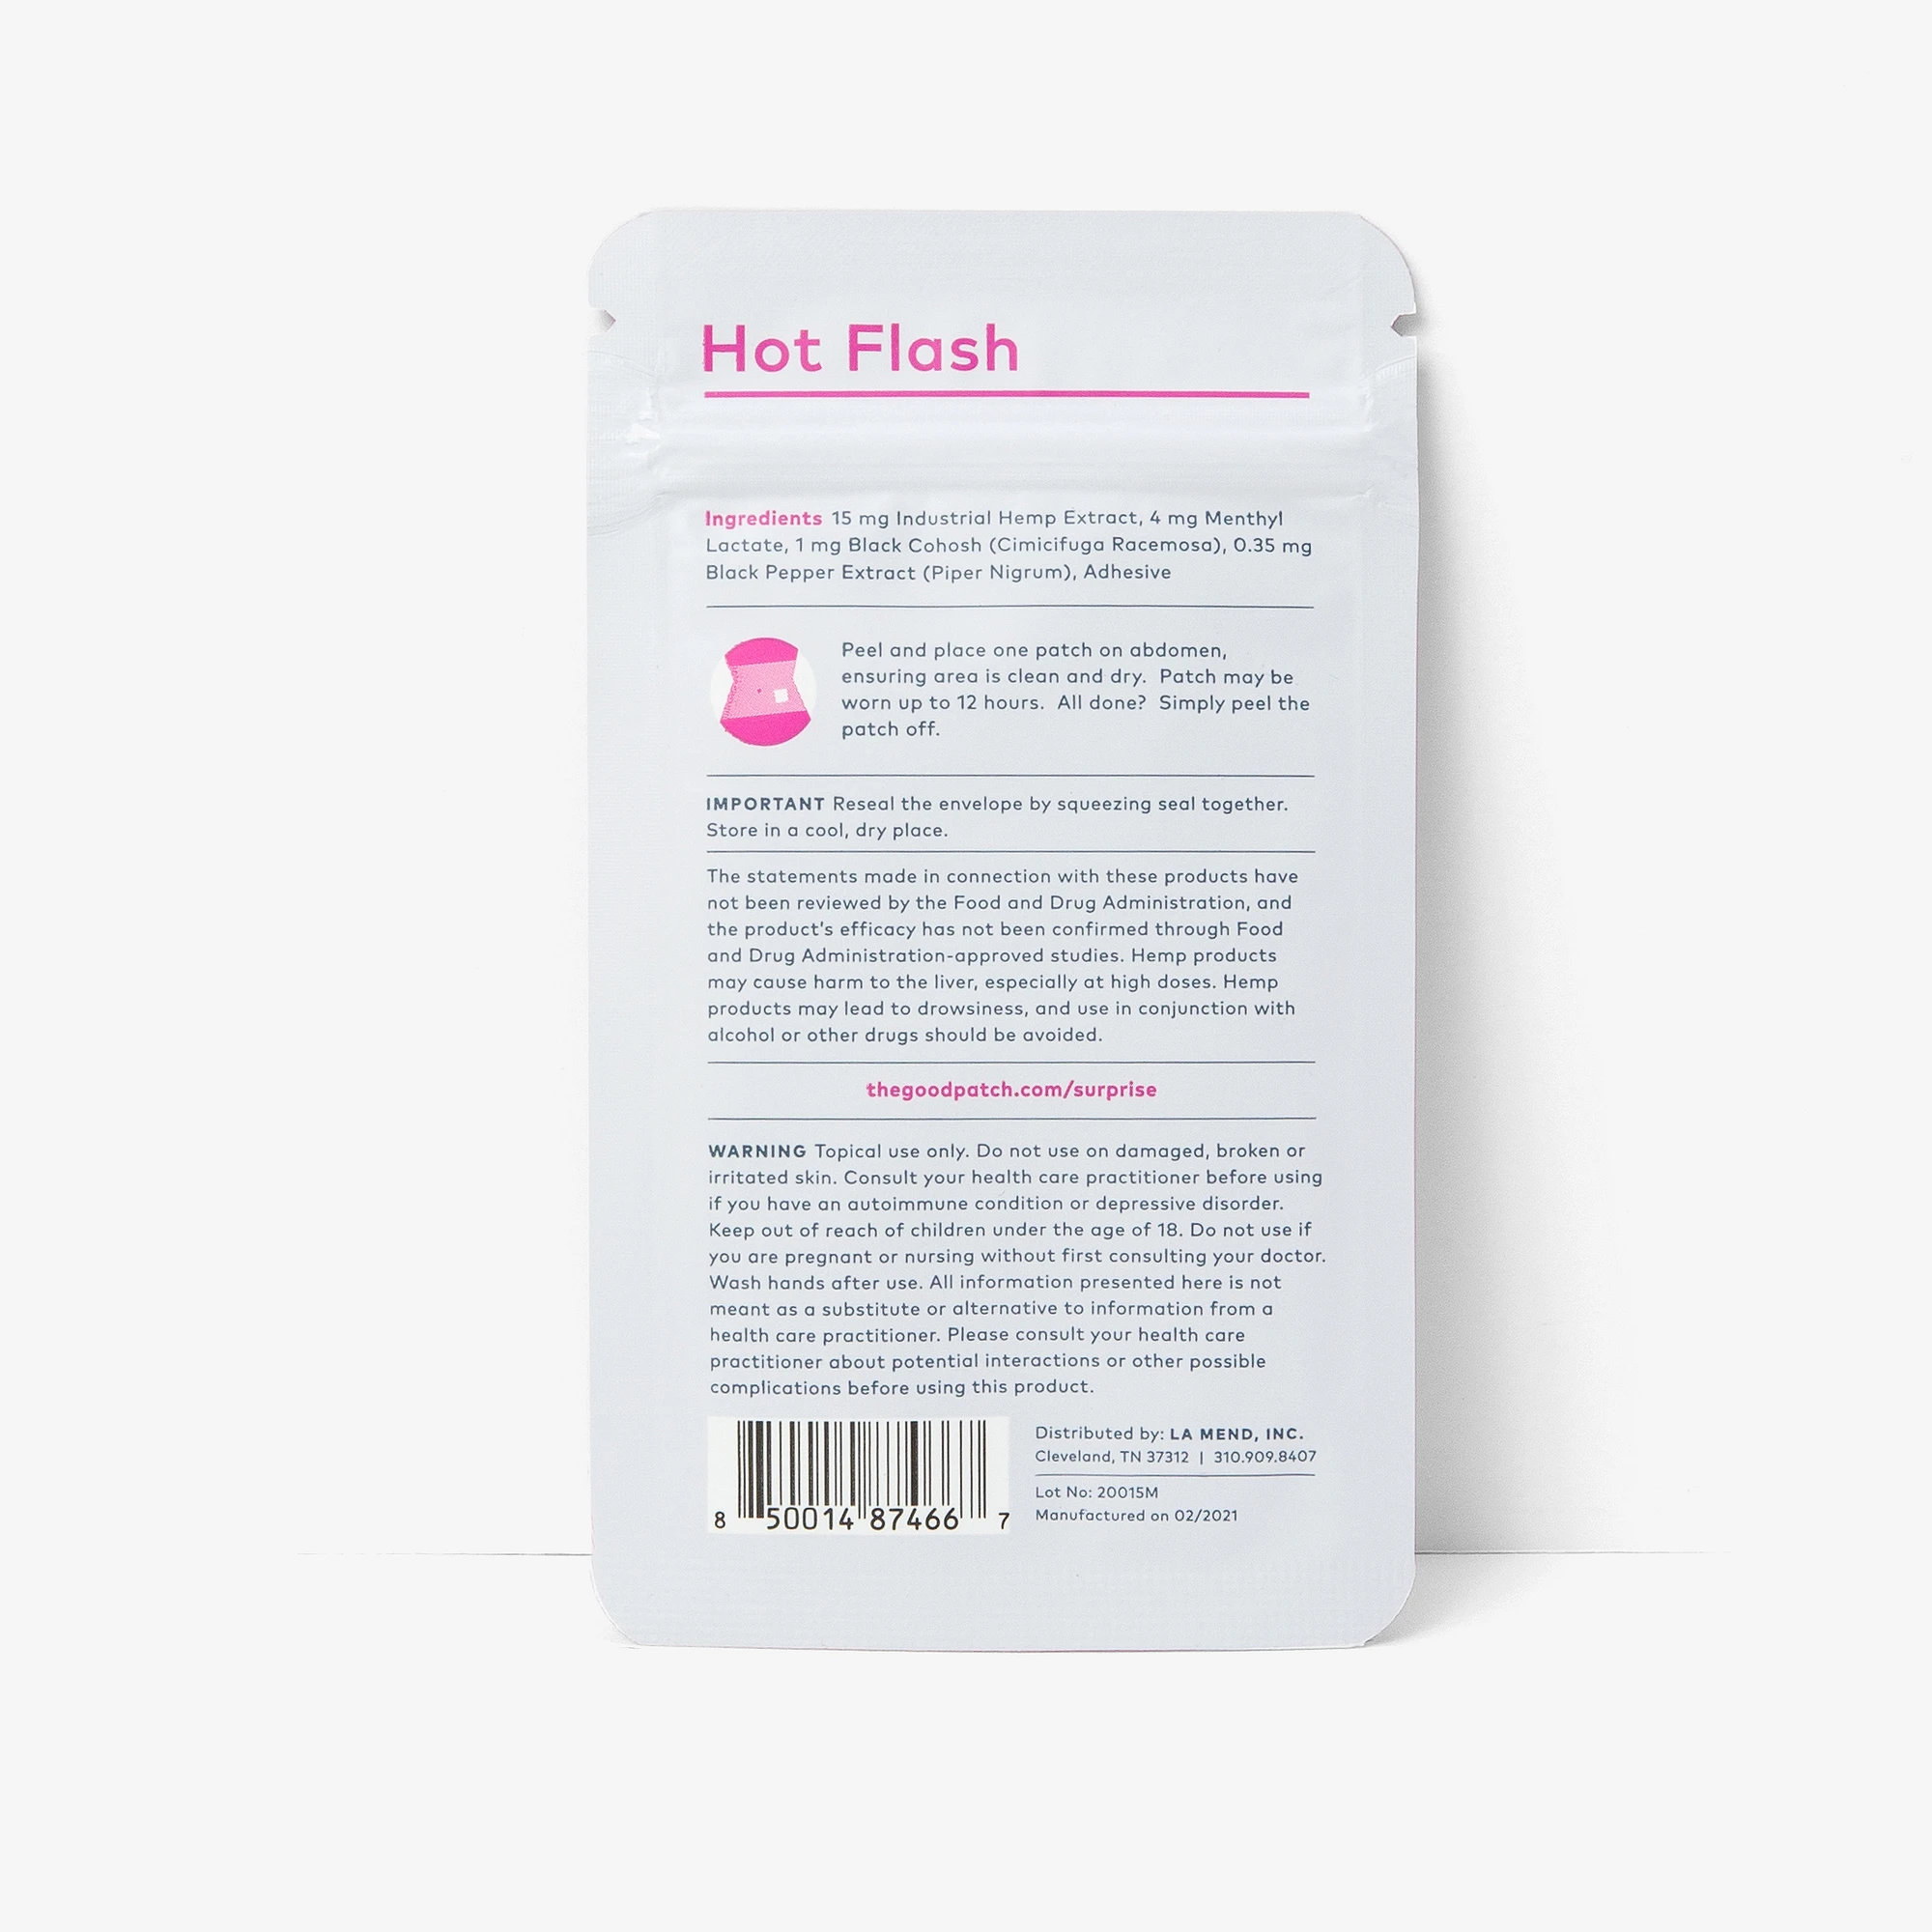 hotflash-back